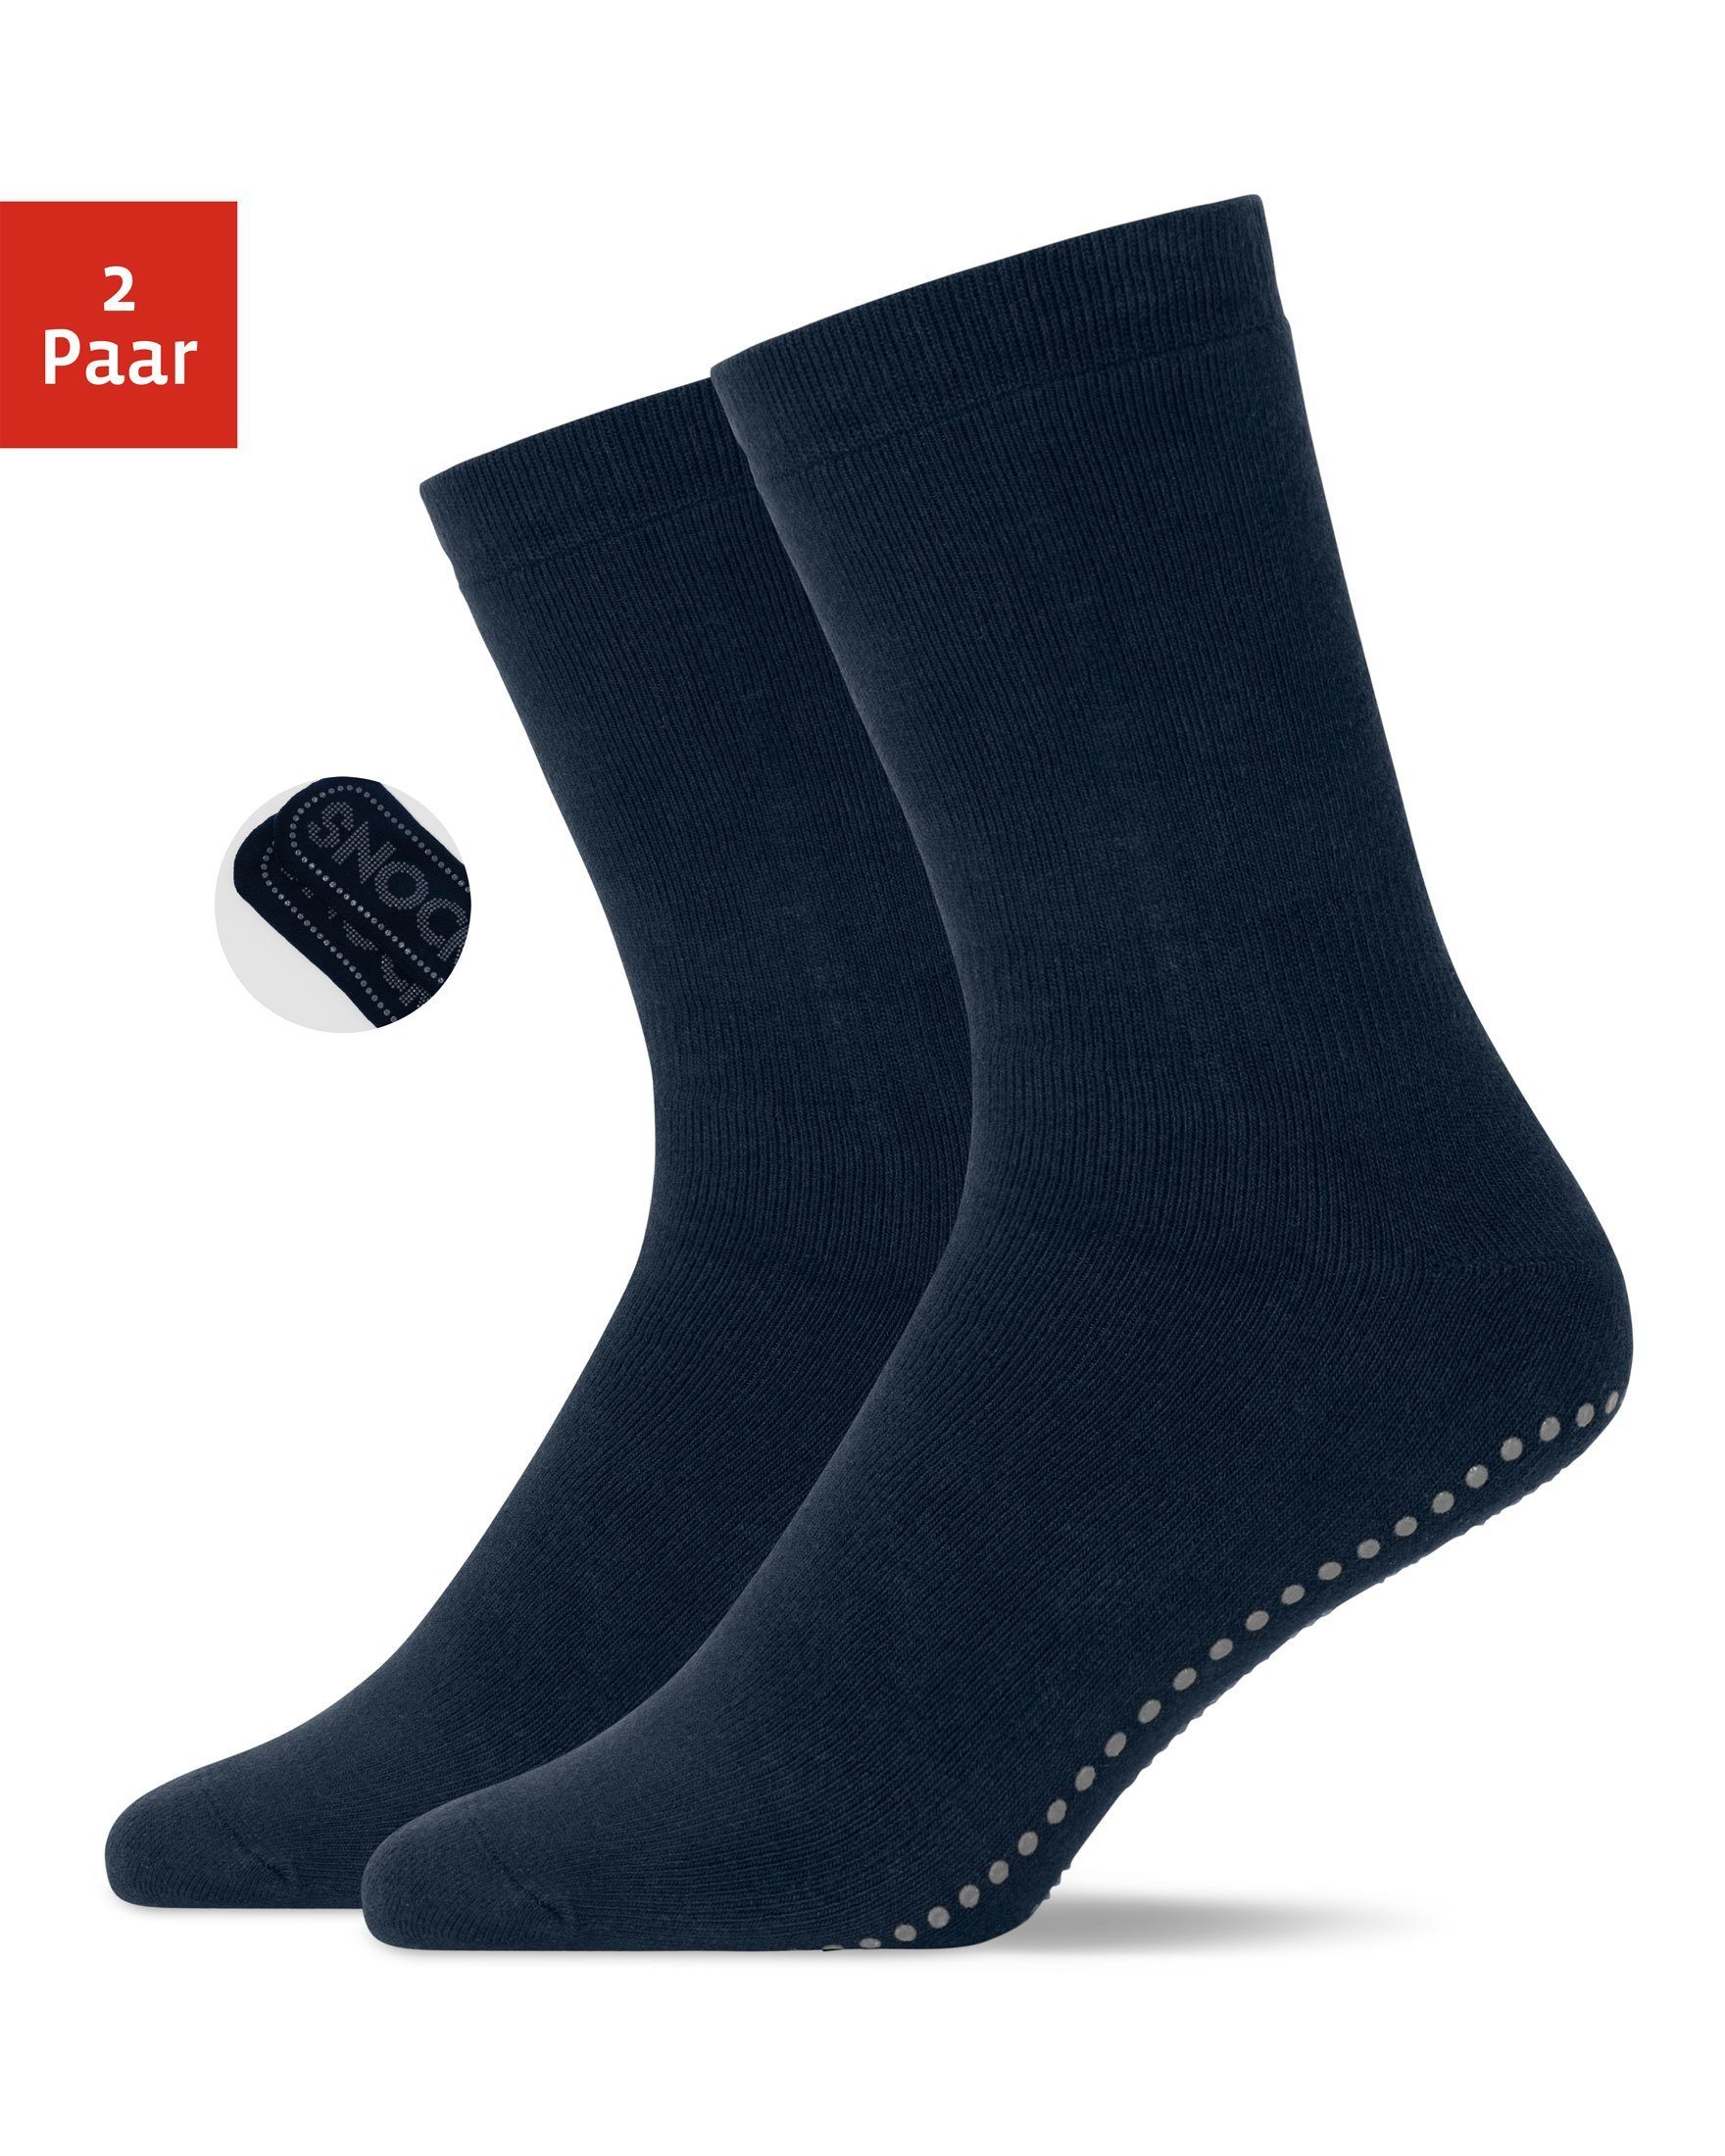 SNOCKS ABS-Socken Anti-Rutsch Socken Damen & Herren (2-Paar) aus Bio-Baumwolle, Anti-Rutsch-Noppen in süßem Design Blau (SNOCKS)